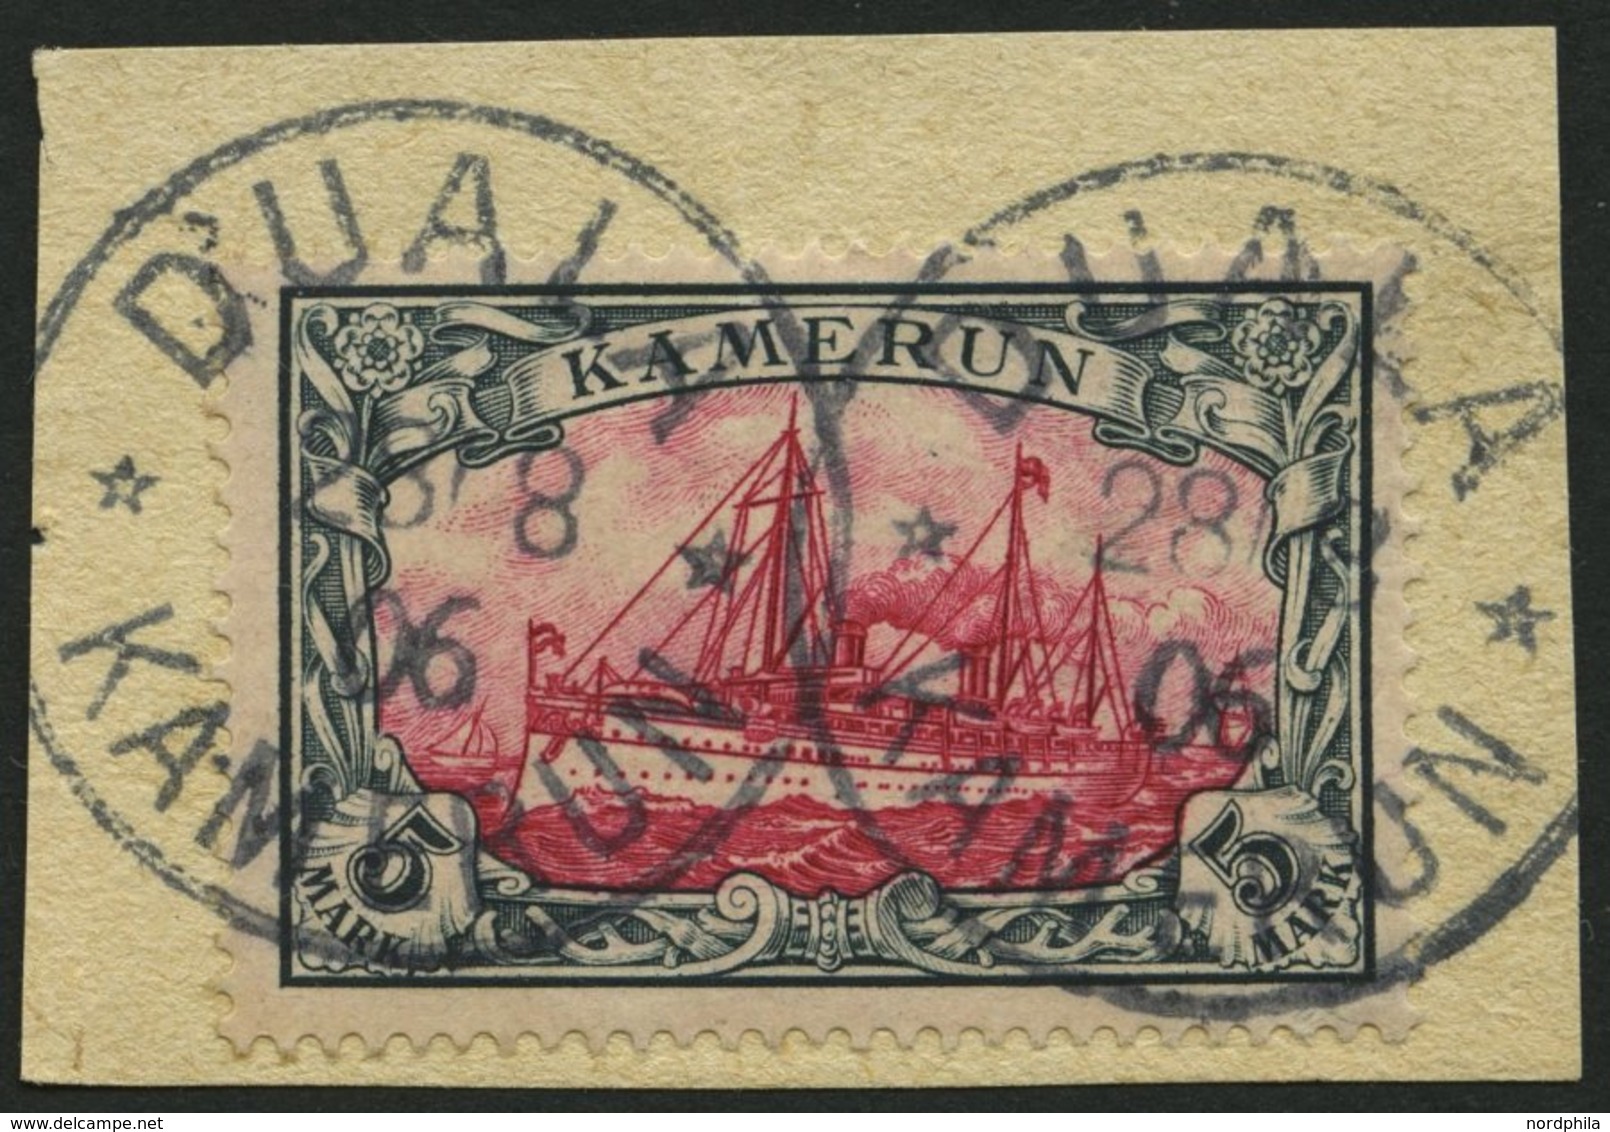 KAMERUN 19 BrfStk, 1900, 5 M. Grünschwarz/rot, Ohne Wz., Stempel DUALA, Prachtbriefstück, Mi. (600.-) - Kamerun